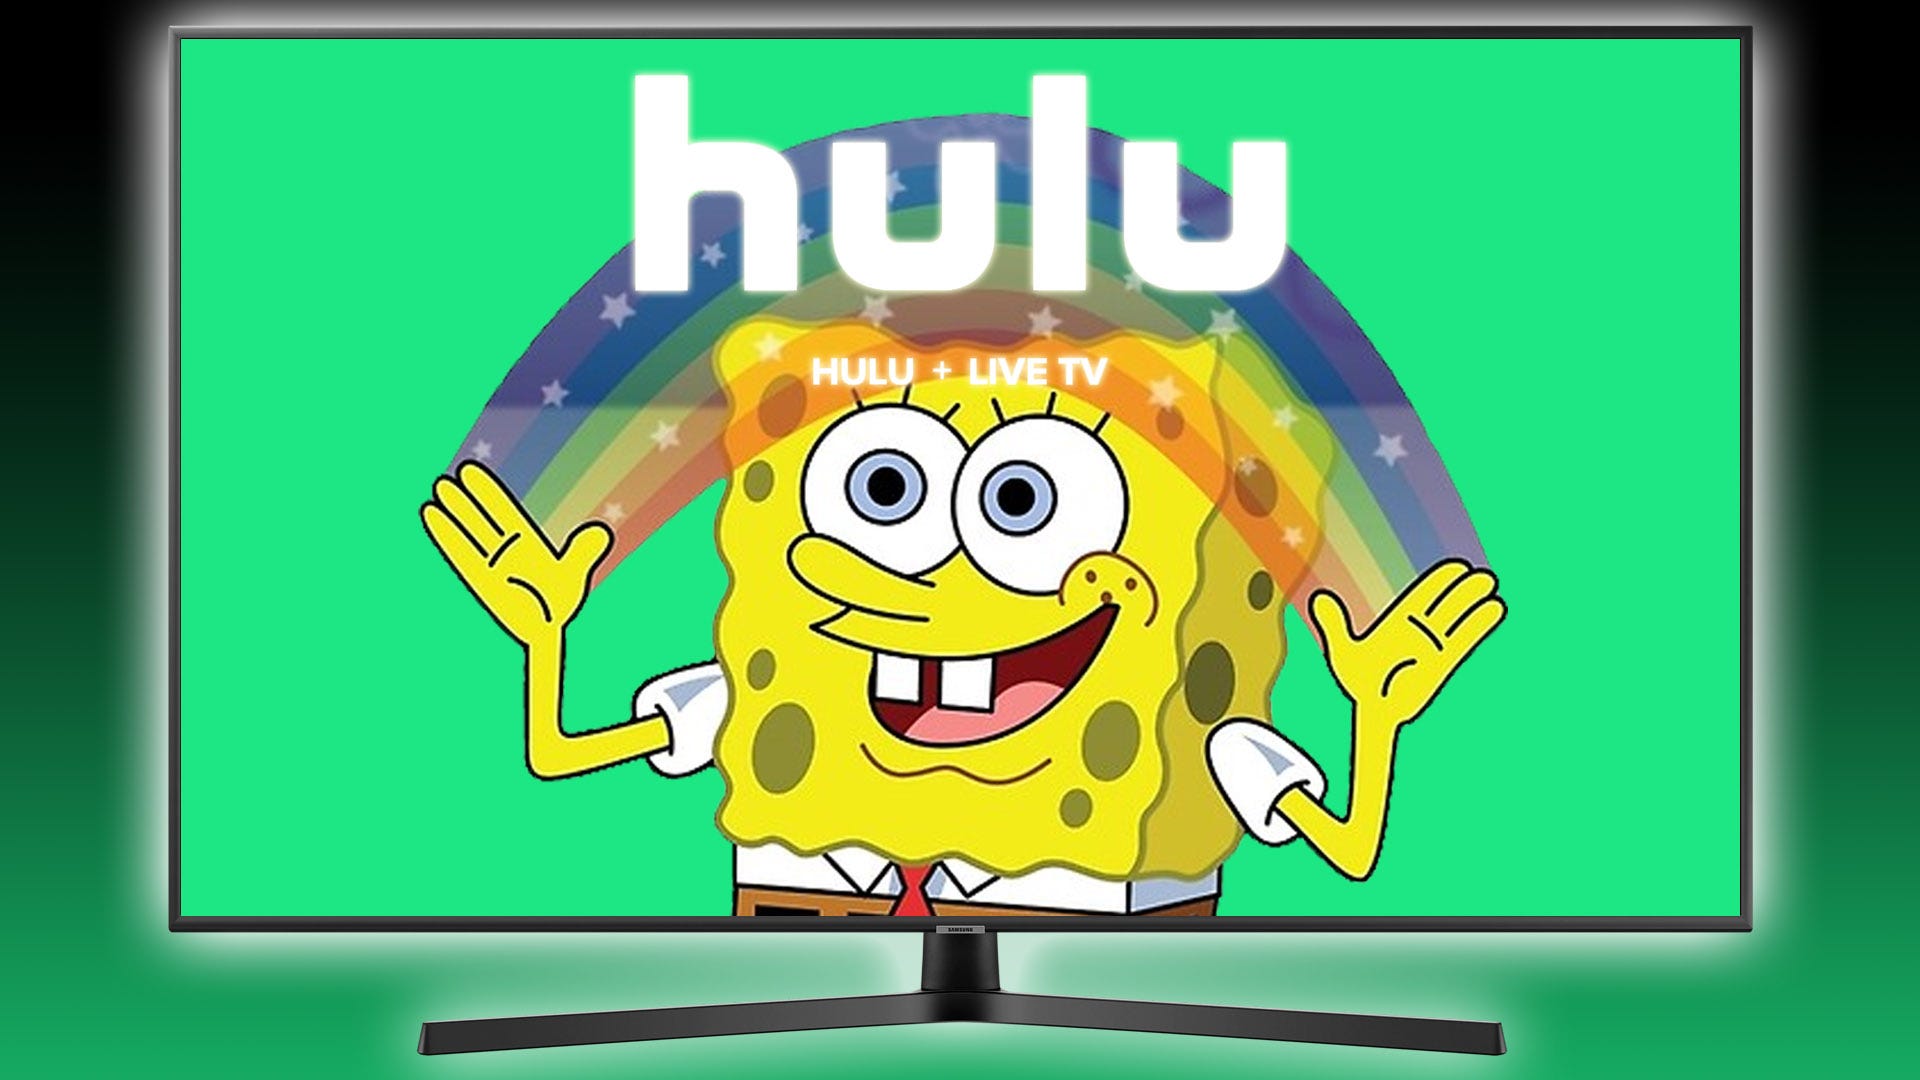 SpongeBob Squarepants và cầu vồng với biểu tượng Hulu chồng lên anh ta.